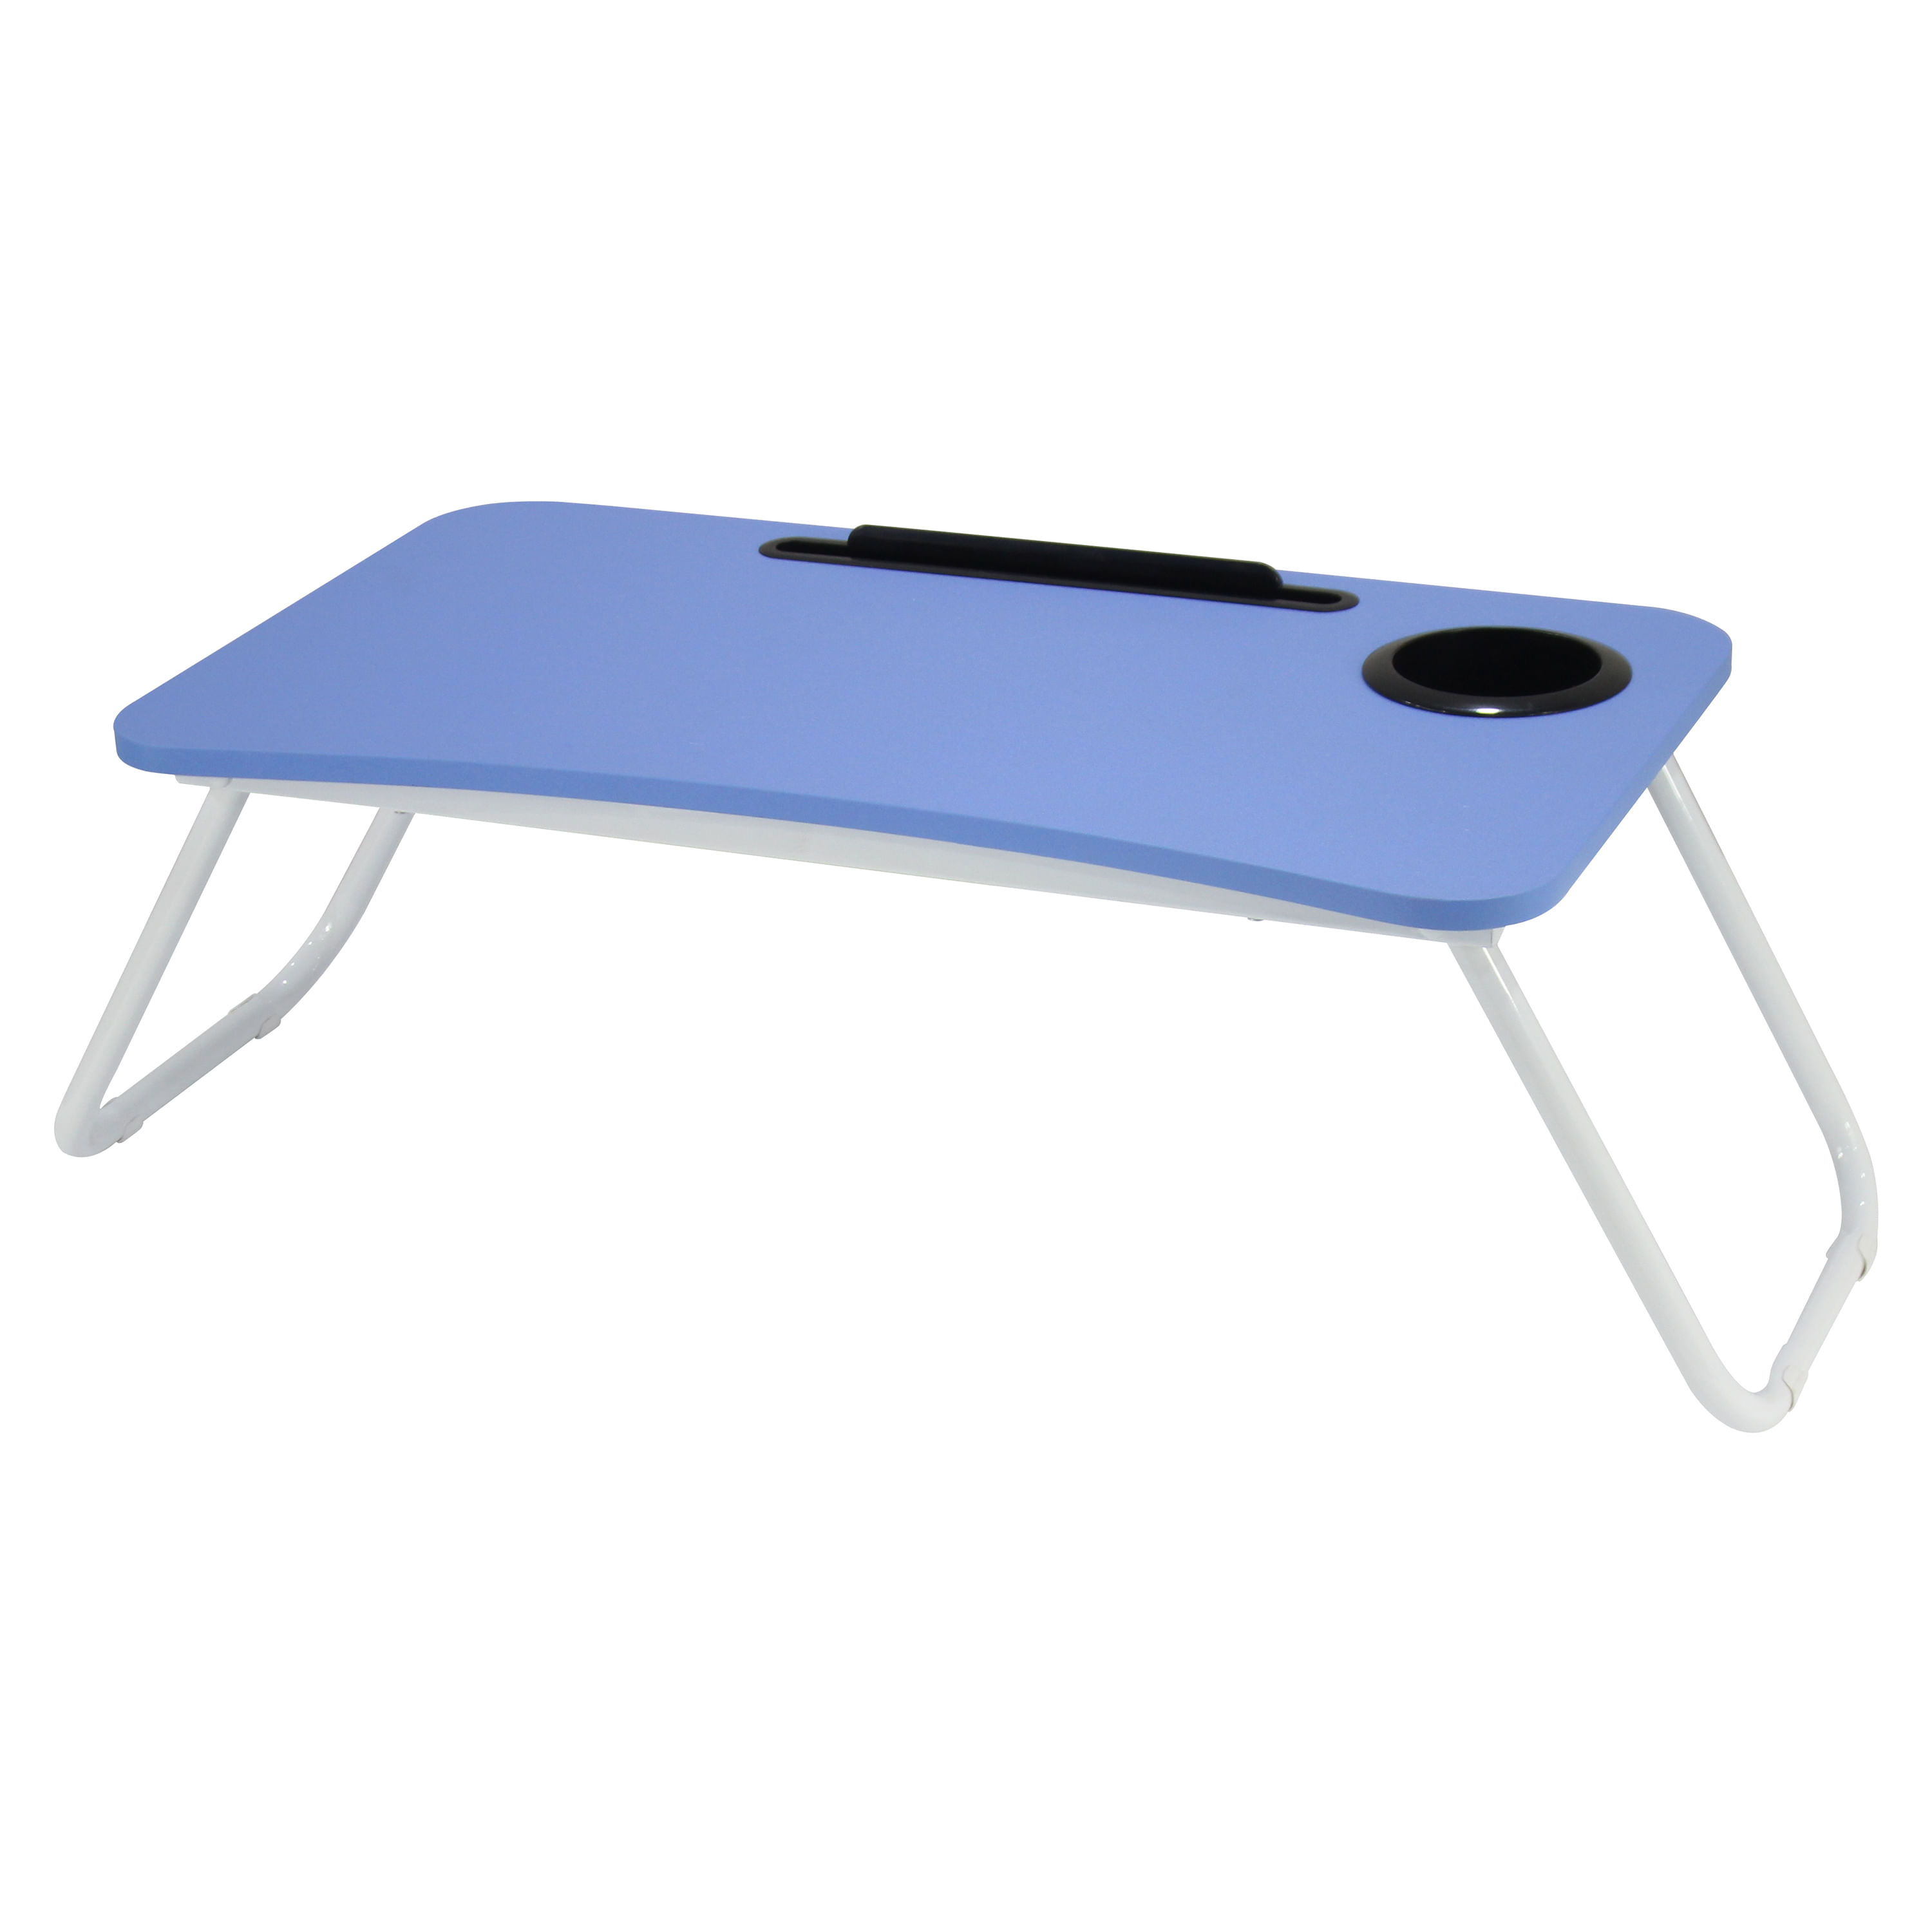  Ready Table - Mesa plegable pequeña y portátil para